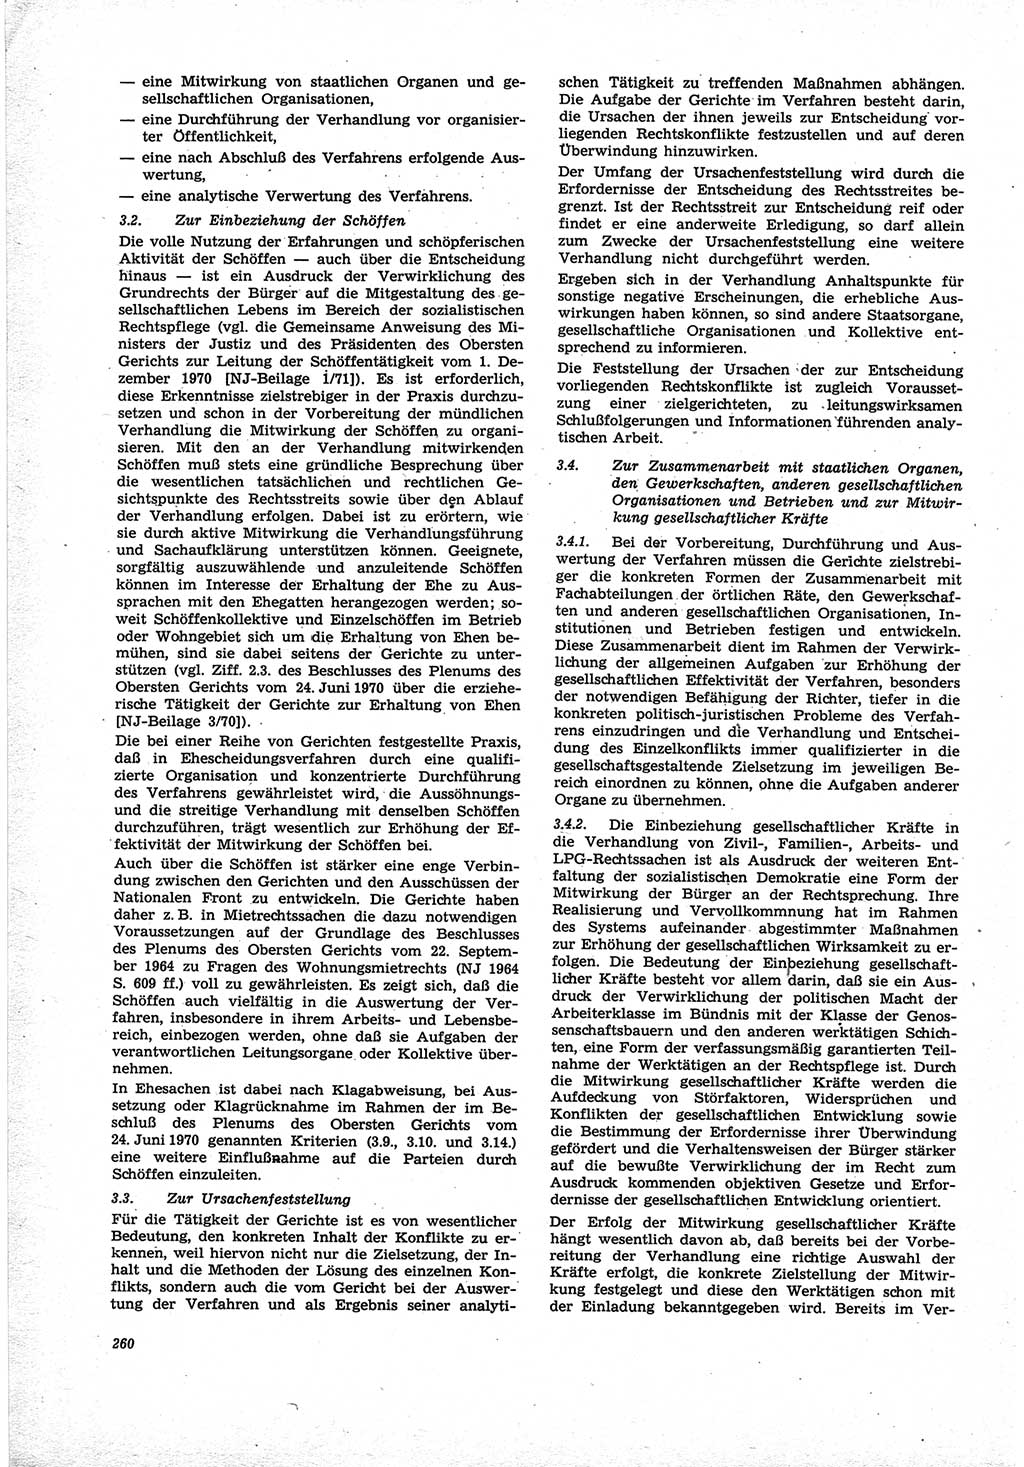 Neue Justiz (NJ), Zeitschrift für Recht und Rechtswissenschaft [Deutsche Demokratische Republik (DDR)], 25. Jahrgang 1971, Seite 260 (NJ DDR 1971, S. 260)